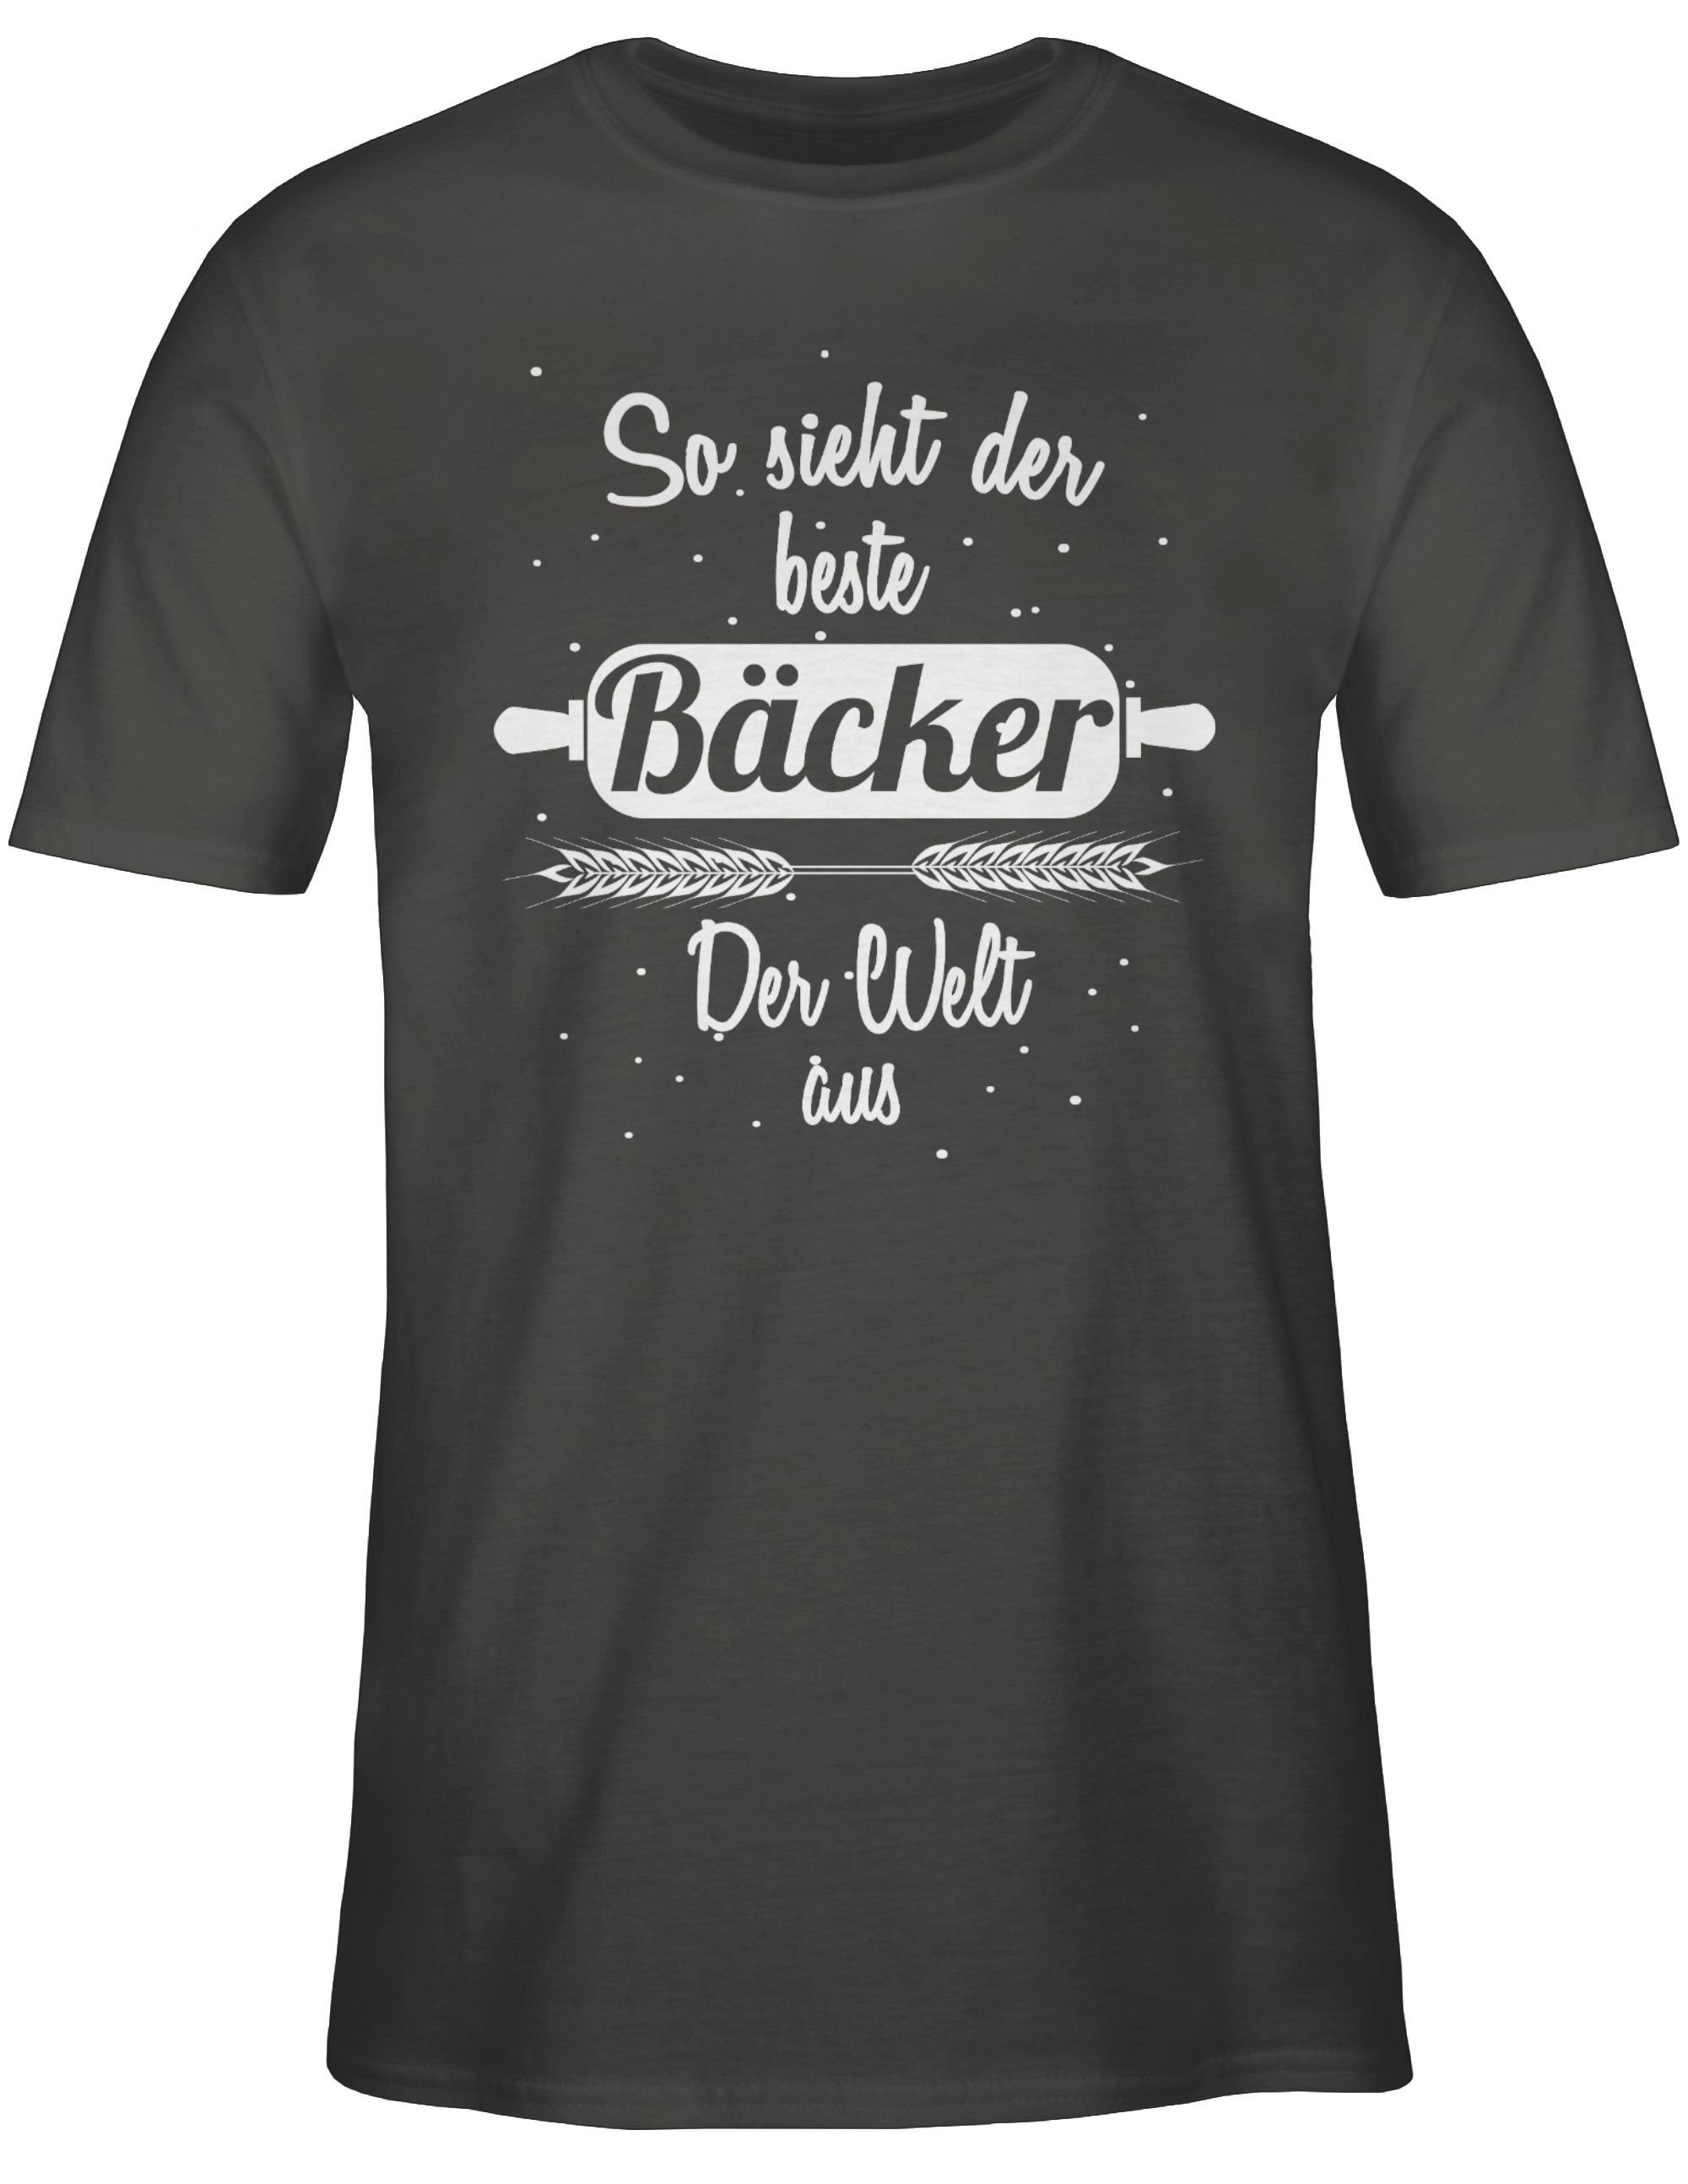 Shirtracer T-Shirt So Job der sieht und beste Dunkelgrau Welt Beruf Bäcker der 3 Geschenke aus